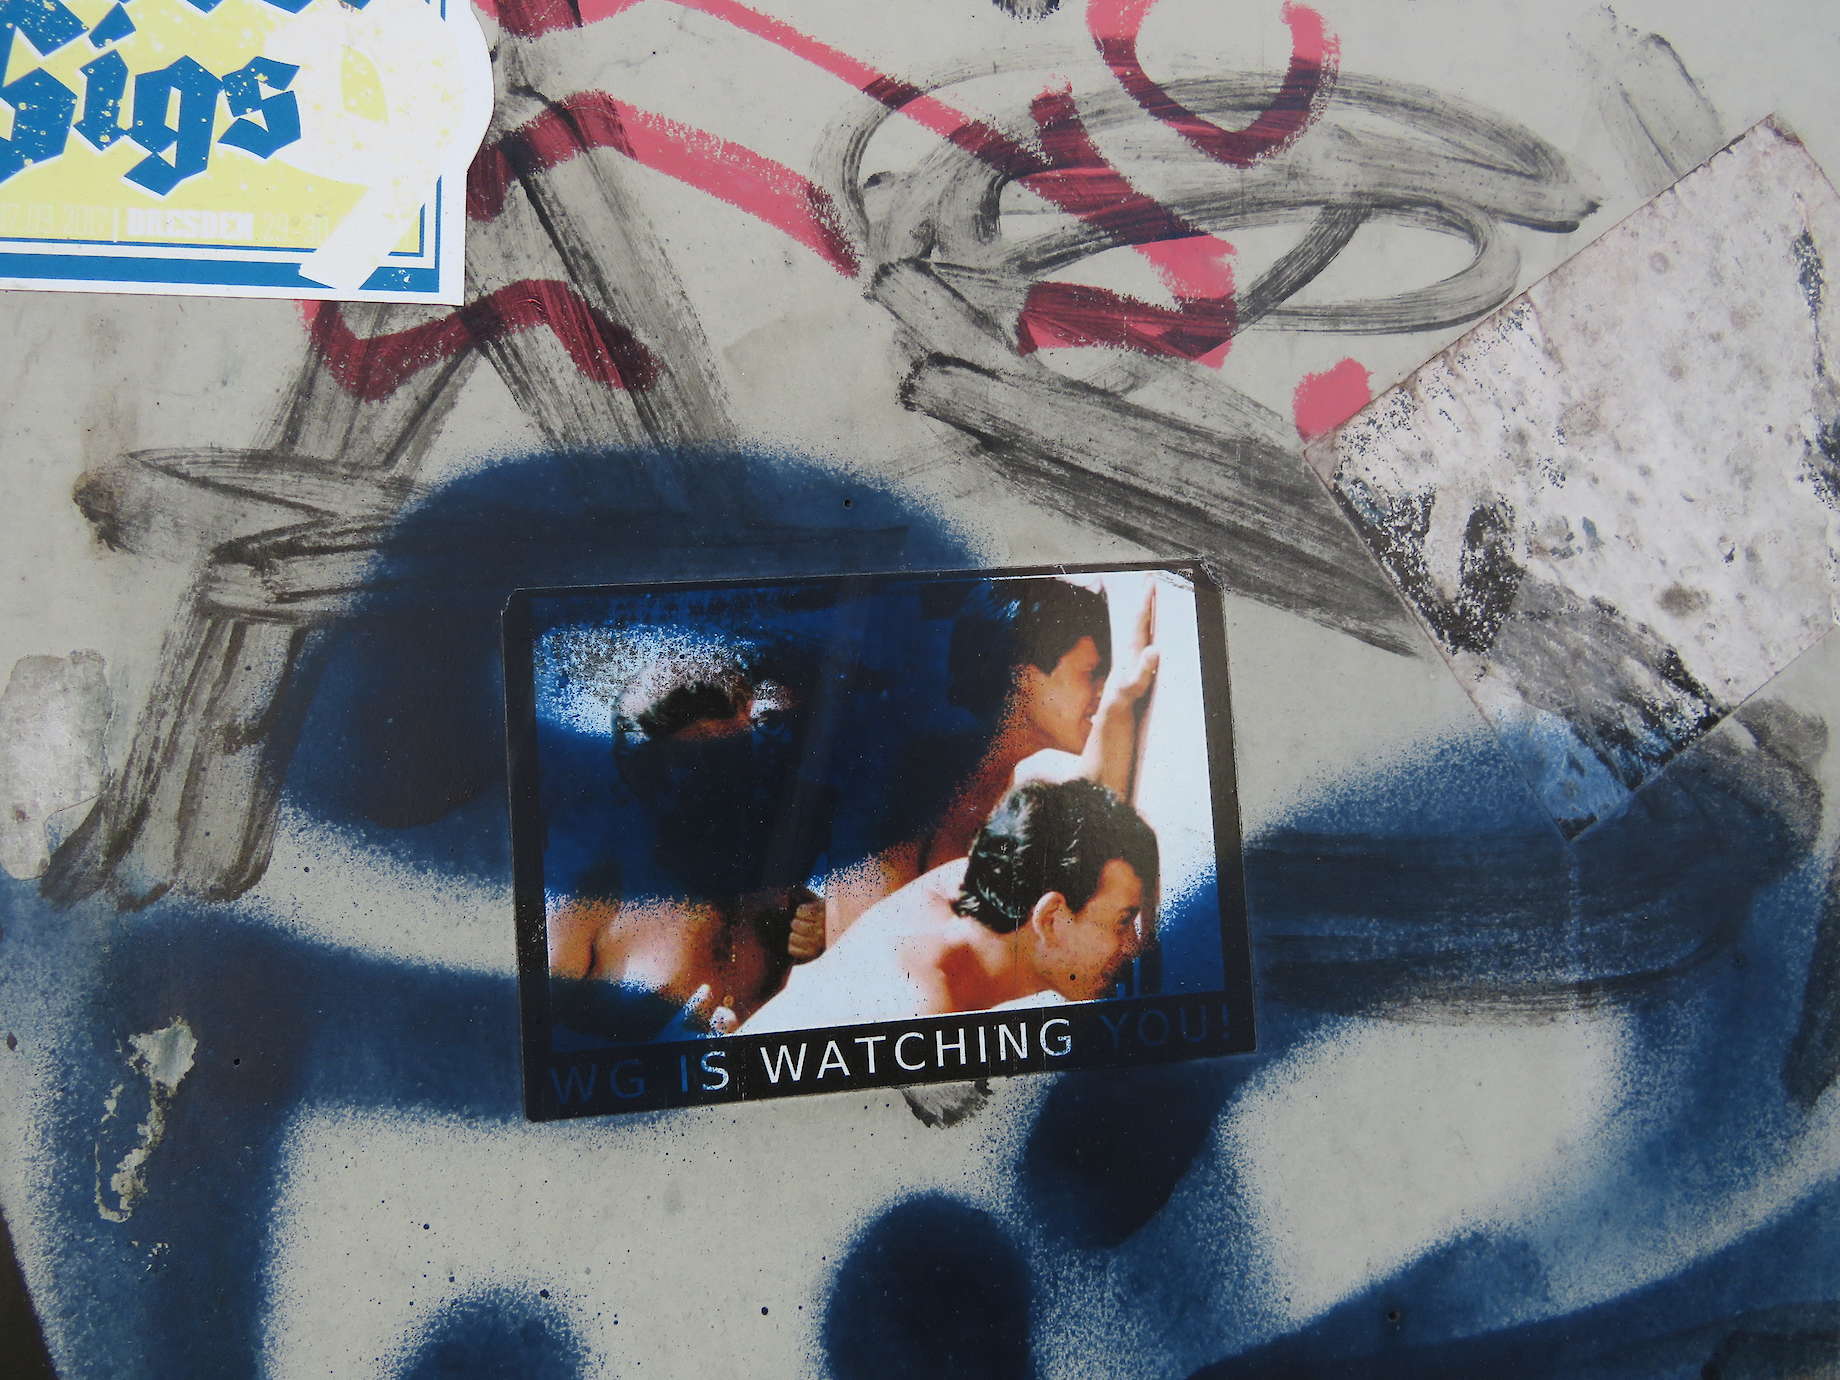 "WG is watching you" - Hinweis auf Überwachung von oben? Oder wachen die Neustädter über dich?